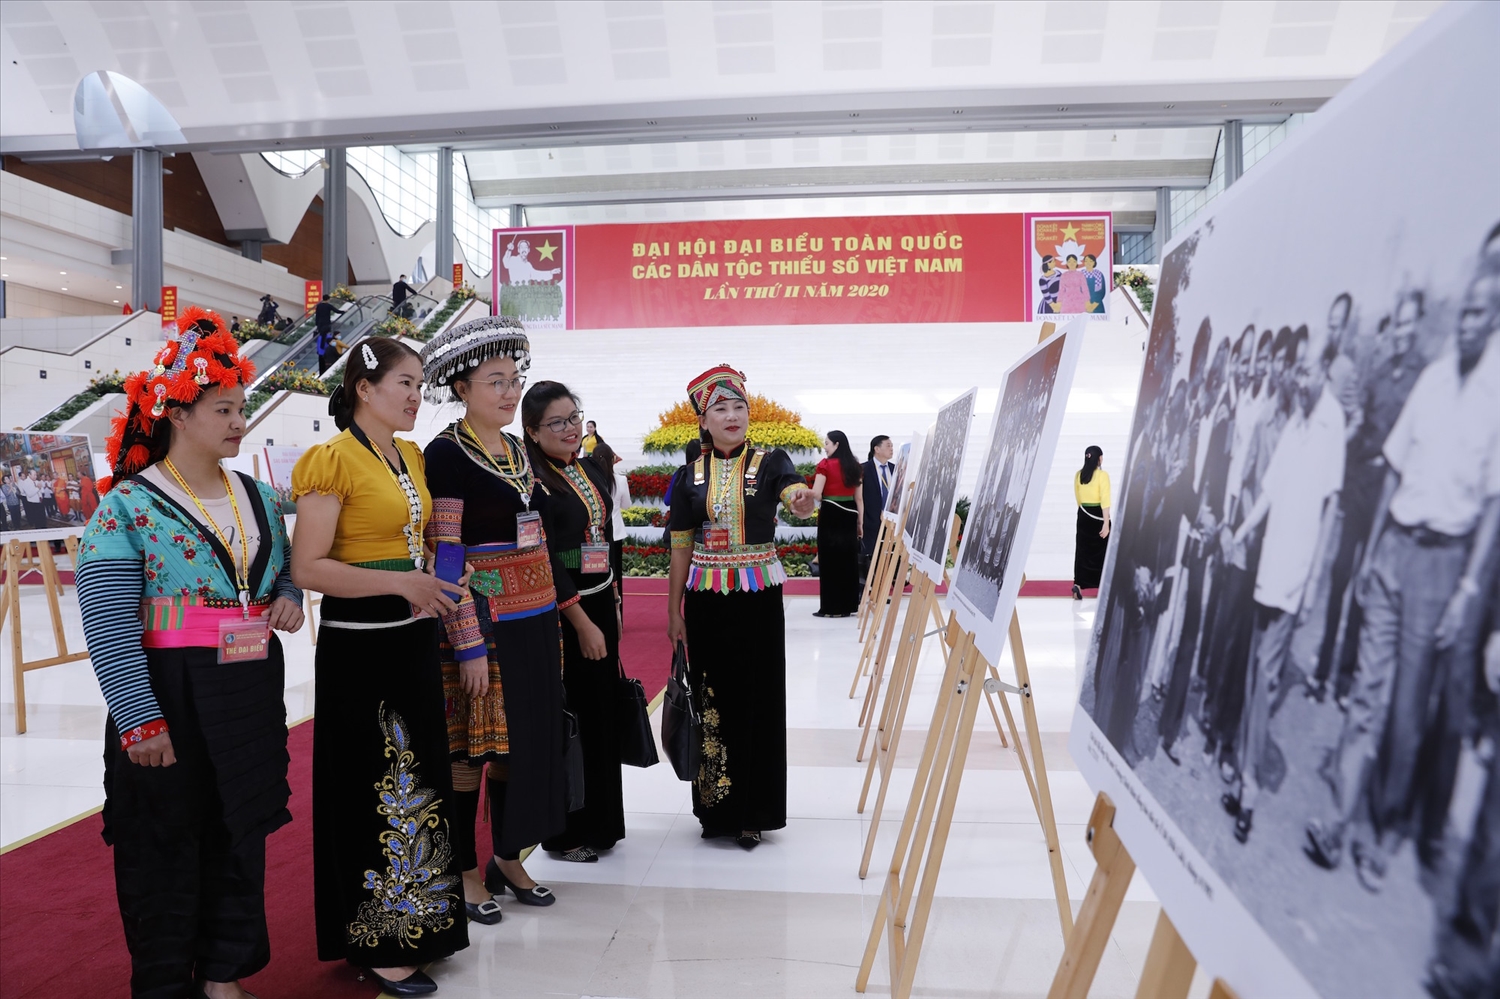 Đại hội là dịp giới thiệu bản sắc văn hóa, thành tựu các dân tộc Việt Nam.